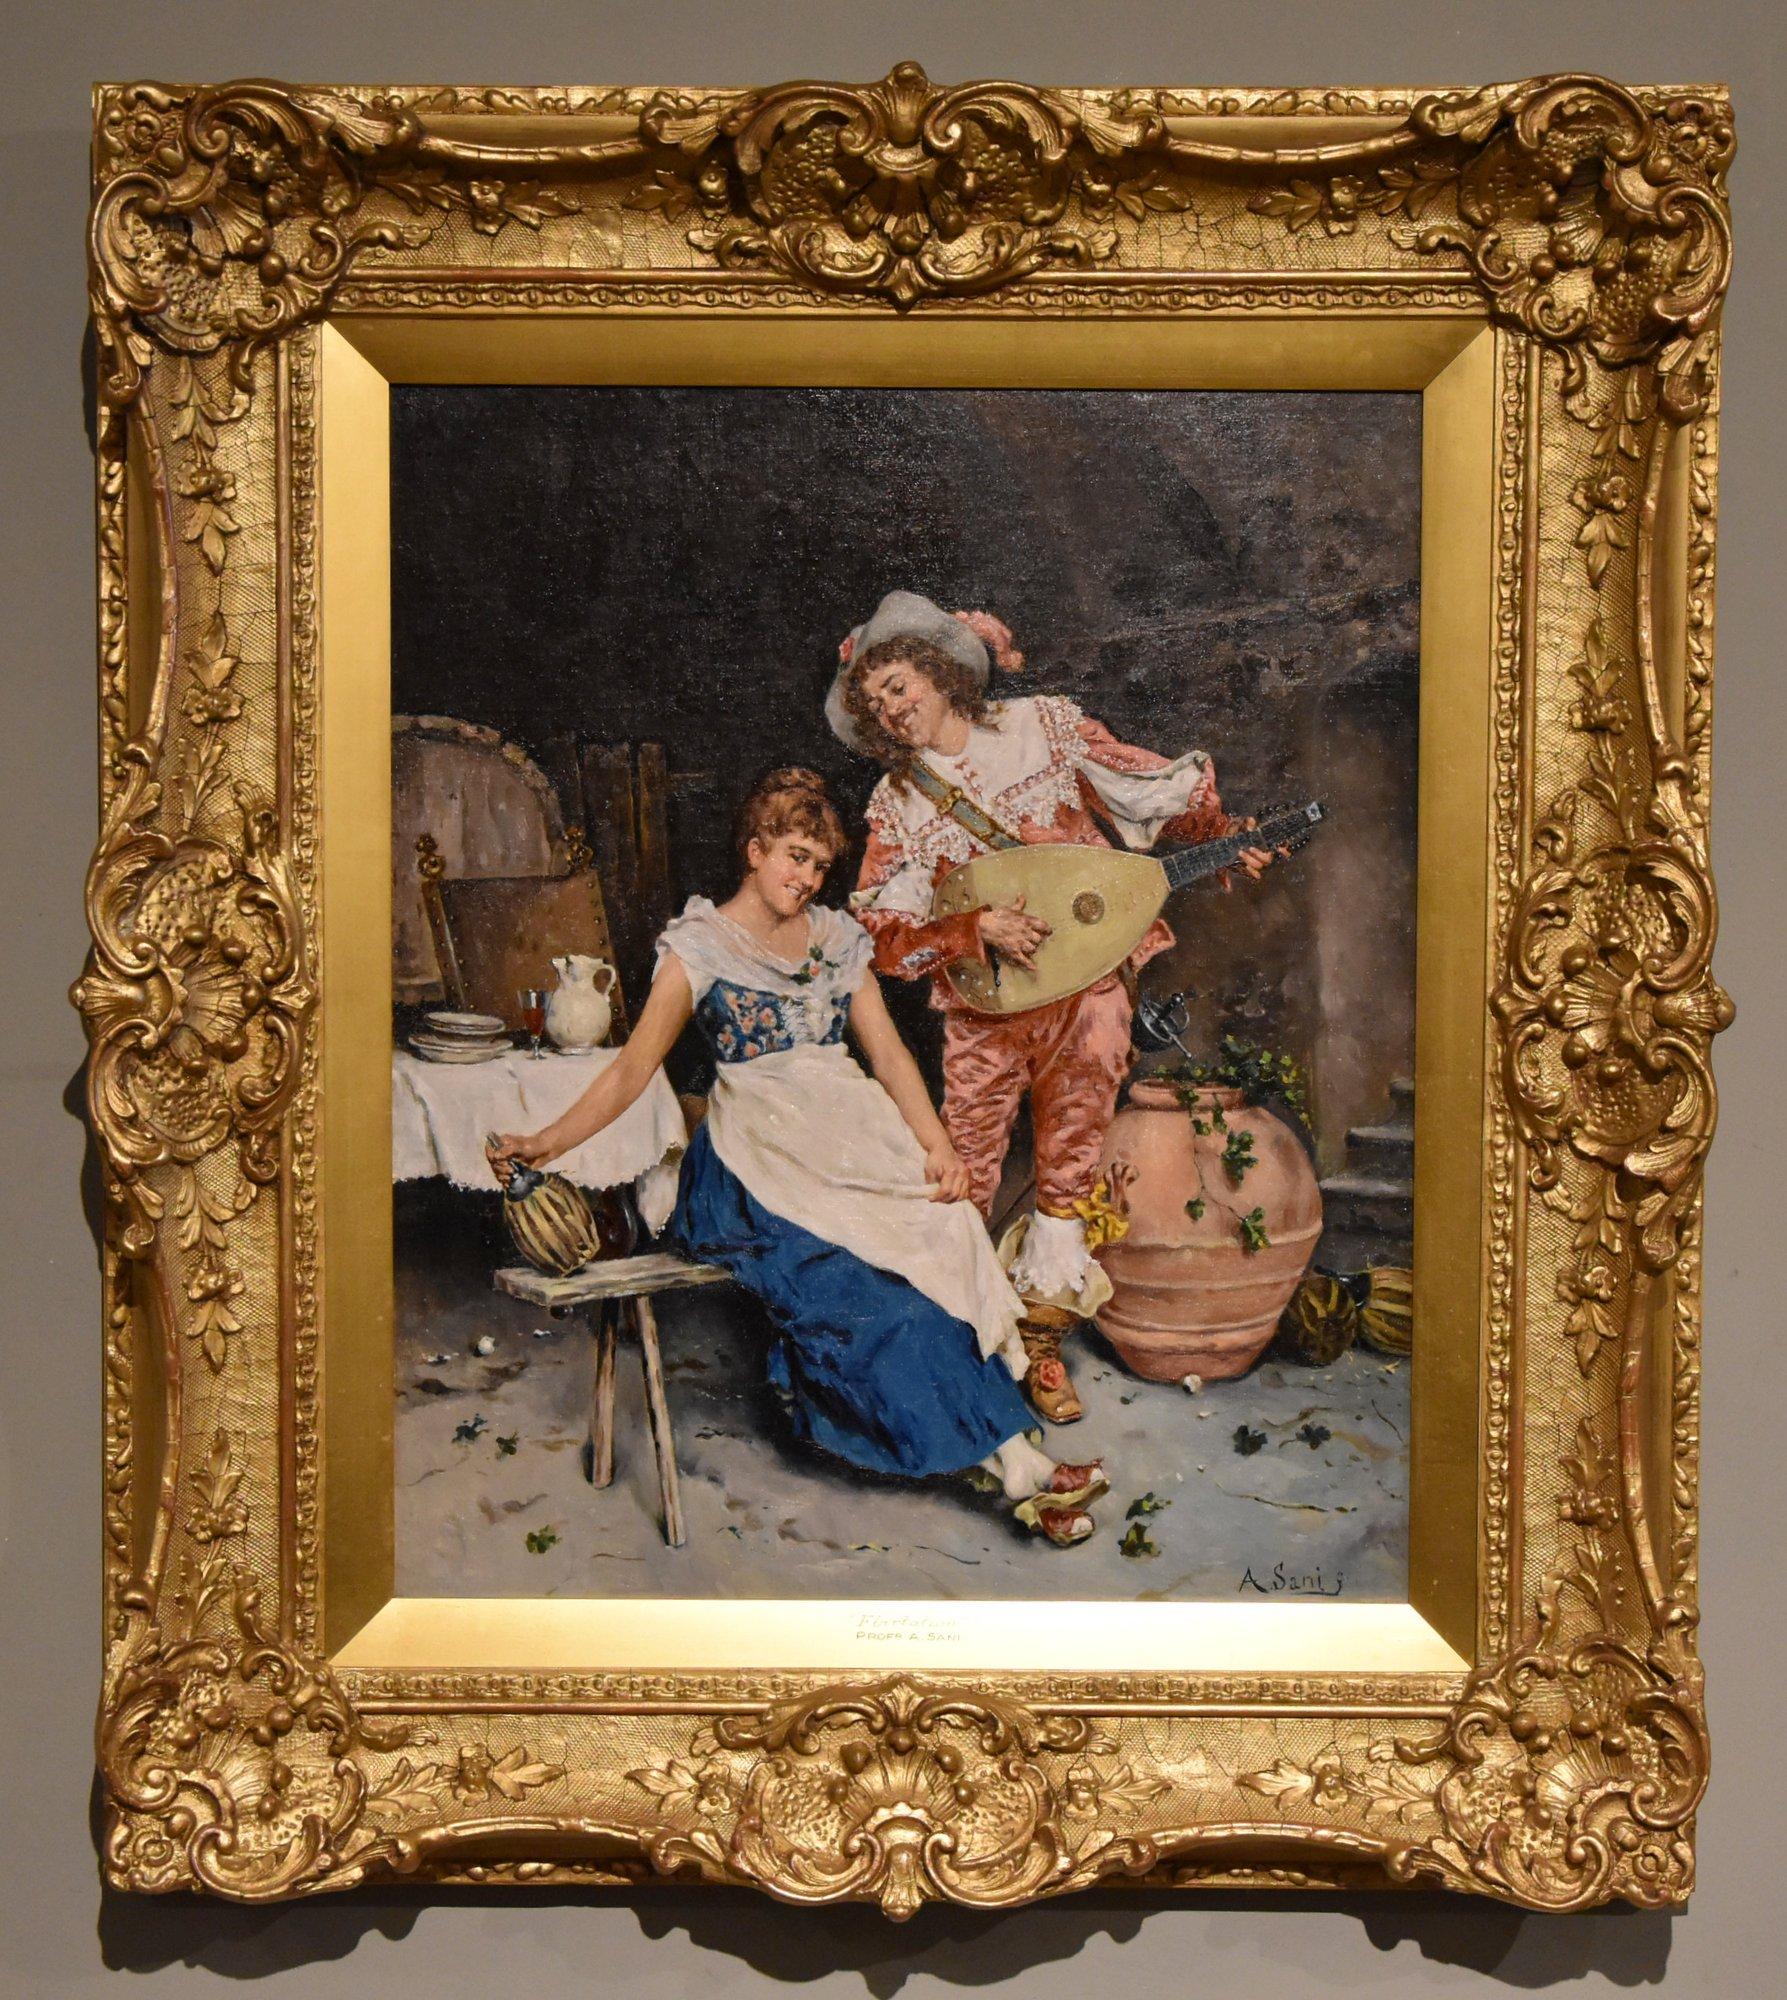 Ölgemälde-Paar von Alessandro Sani "Flirt" 1856 - 1927. Italienischer Maler von häuslichen und historischen Szenen und Professor für Kunst. Mit Sitz in Florenz, malte Mönche, Köche und Kavaliere. In mehreren guten Sammlungen zu finden, darunter die